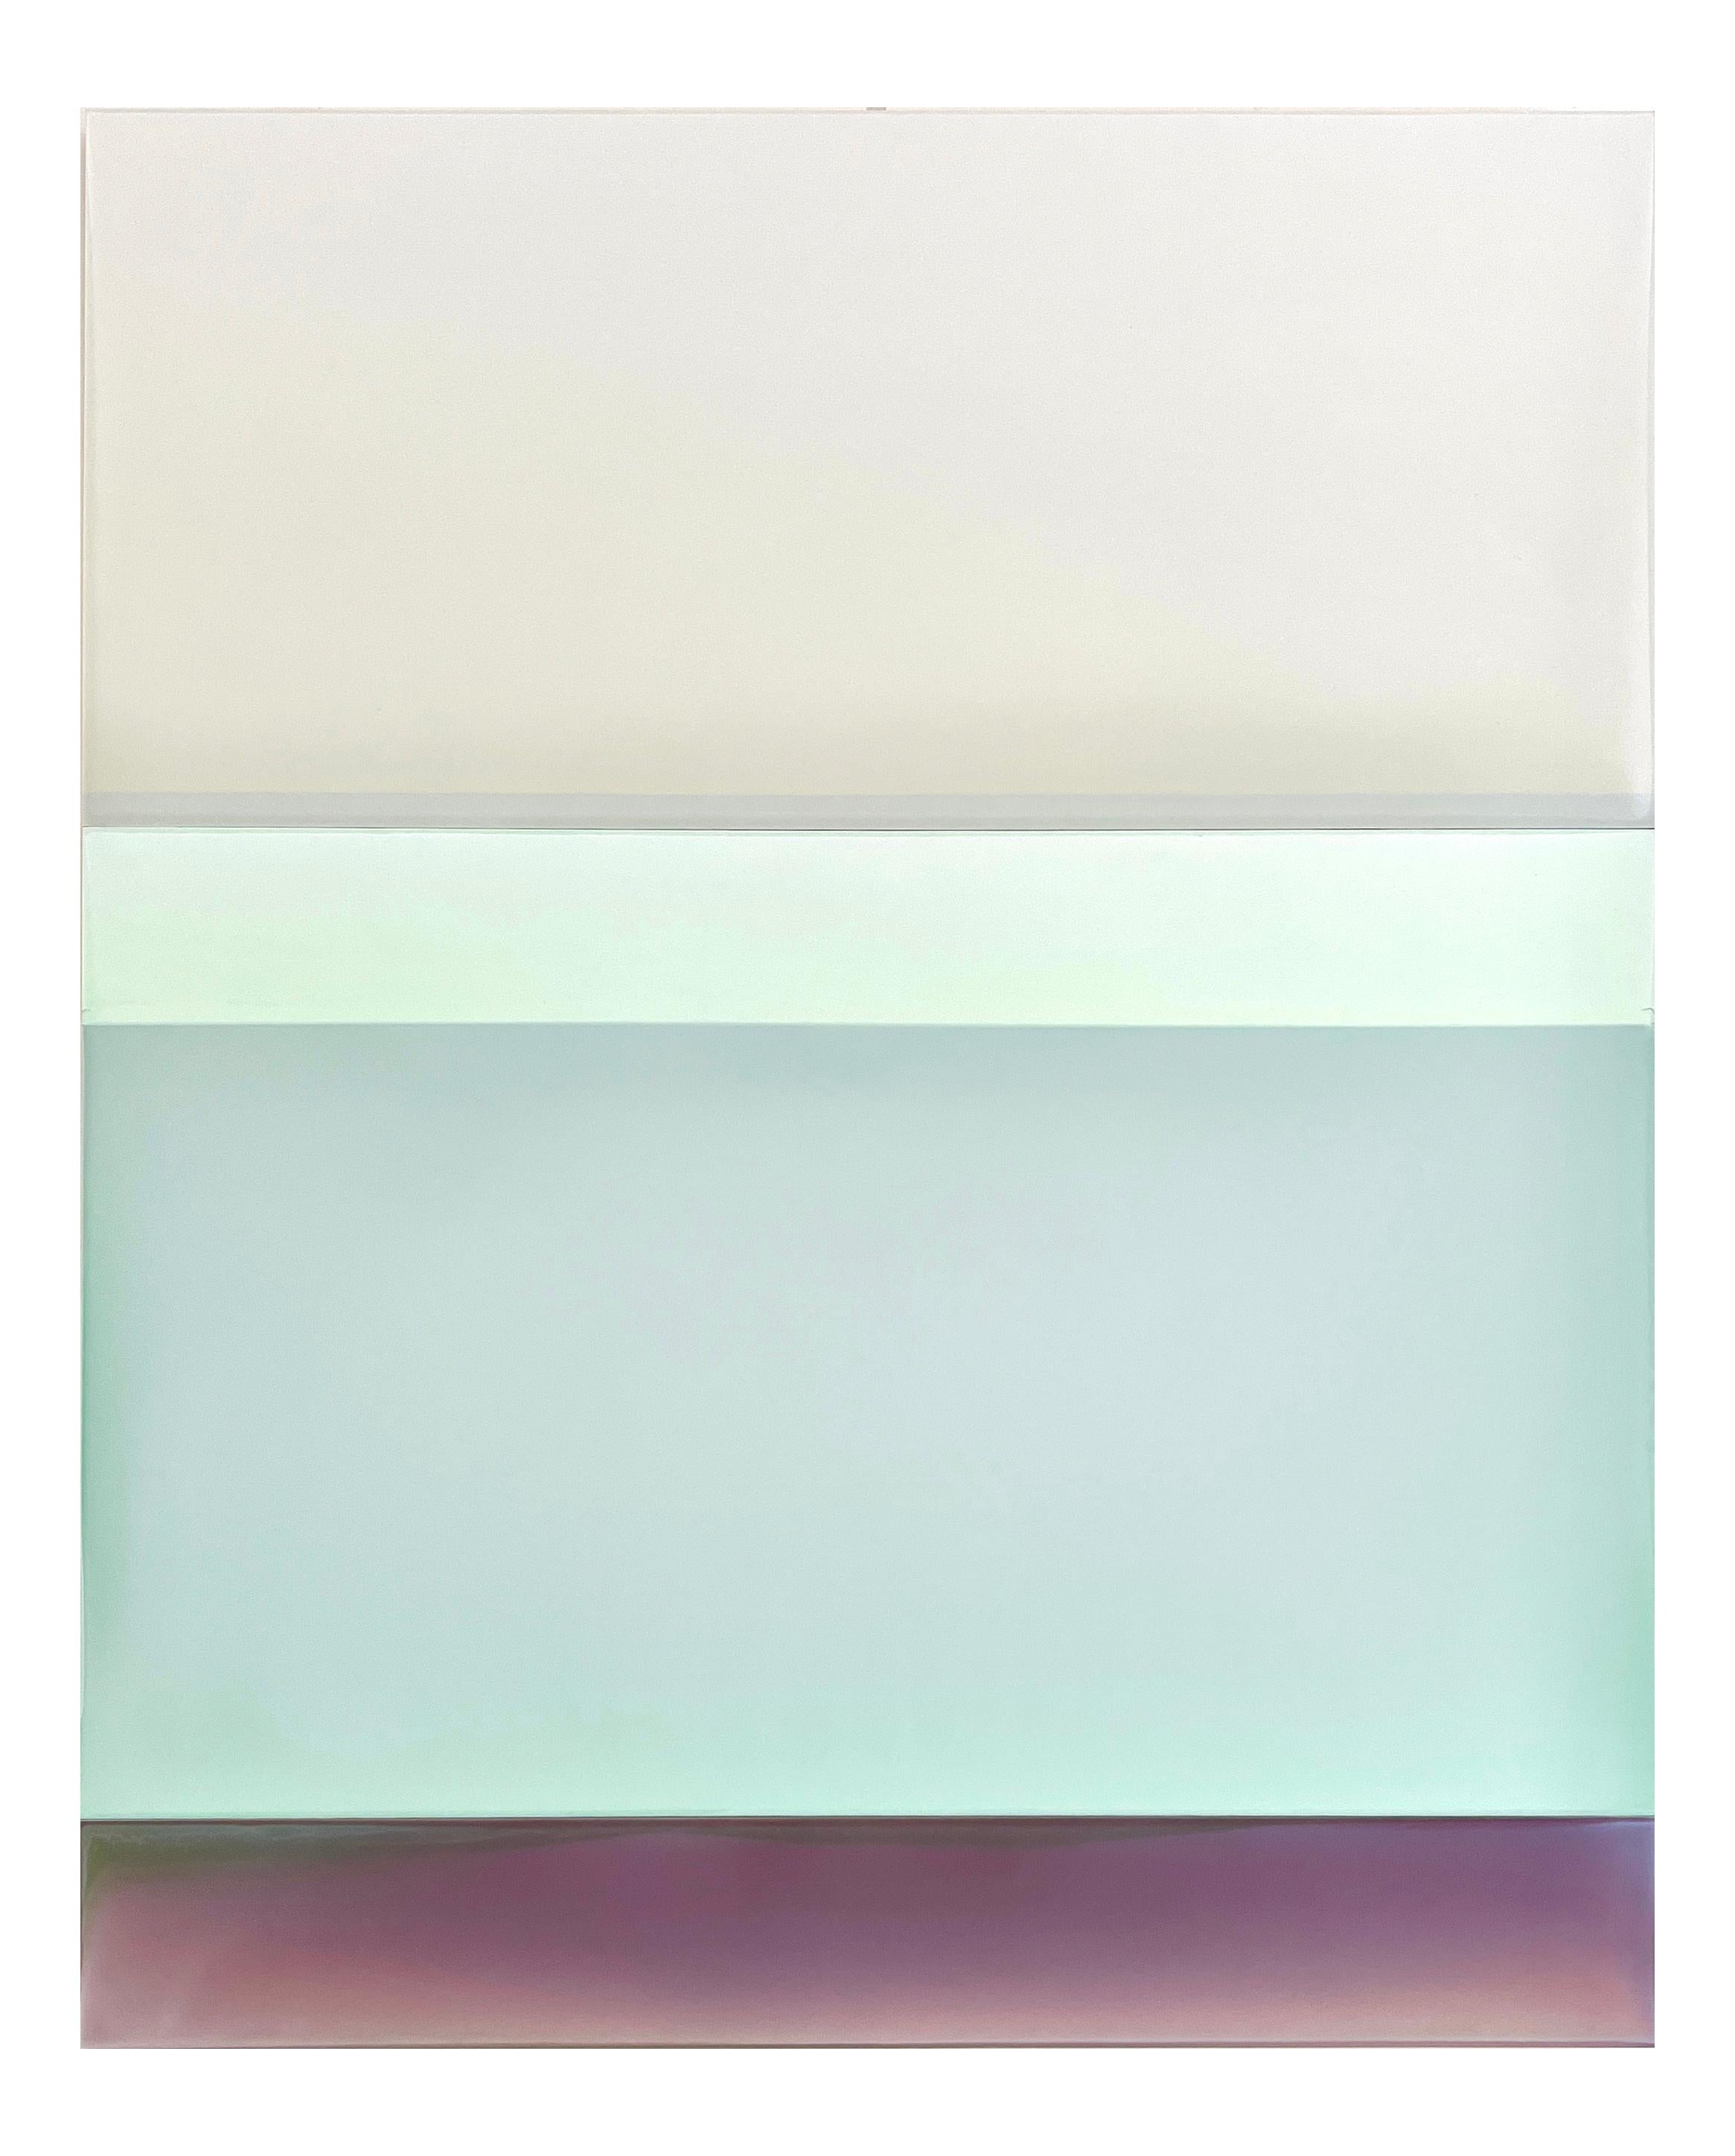 Susan English "Seaglass" - Abstract Tinted Polymer Painting on Panel